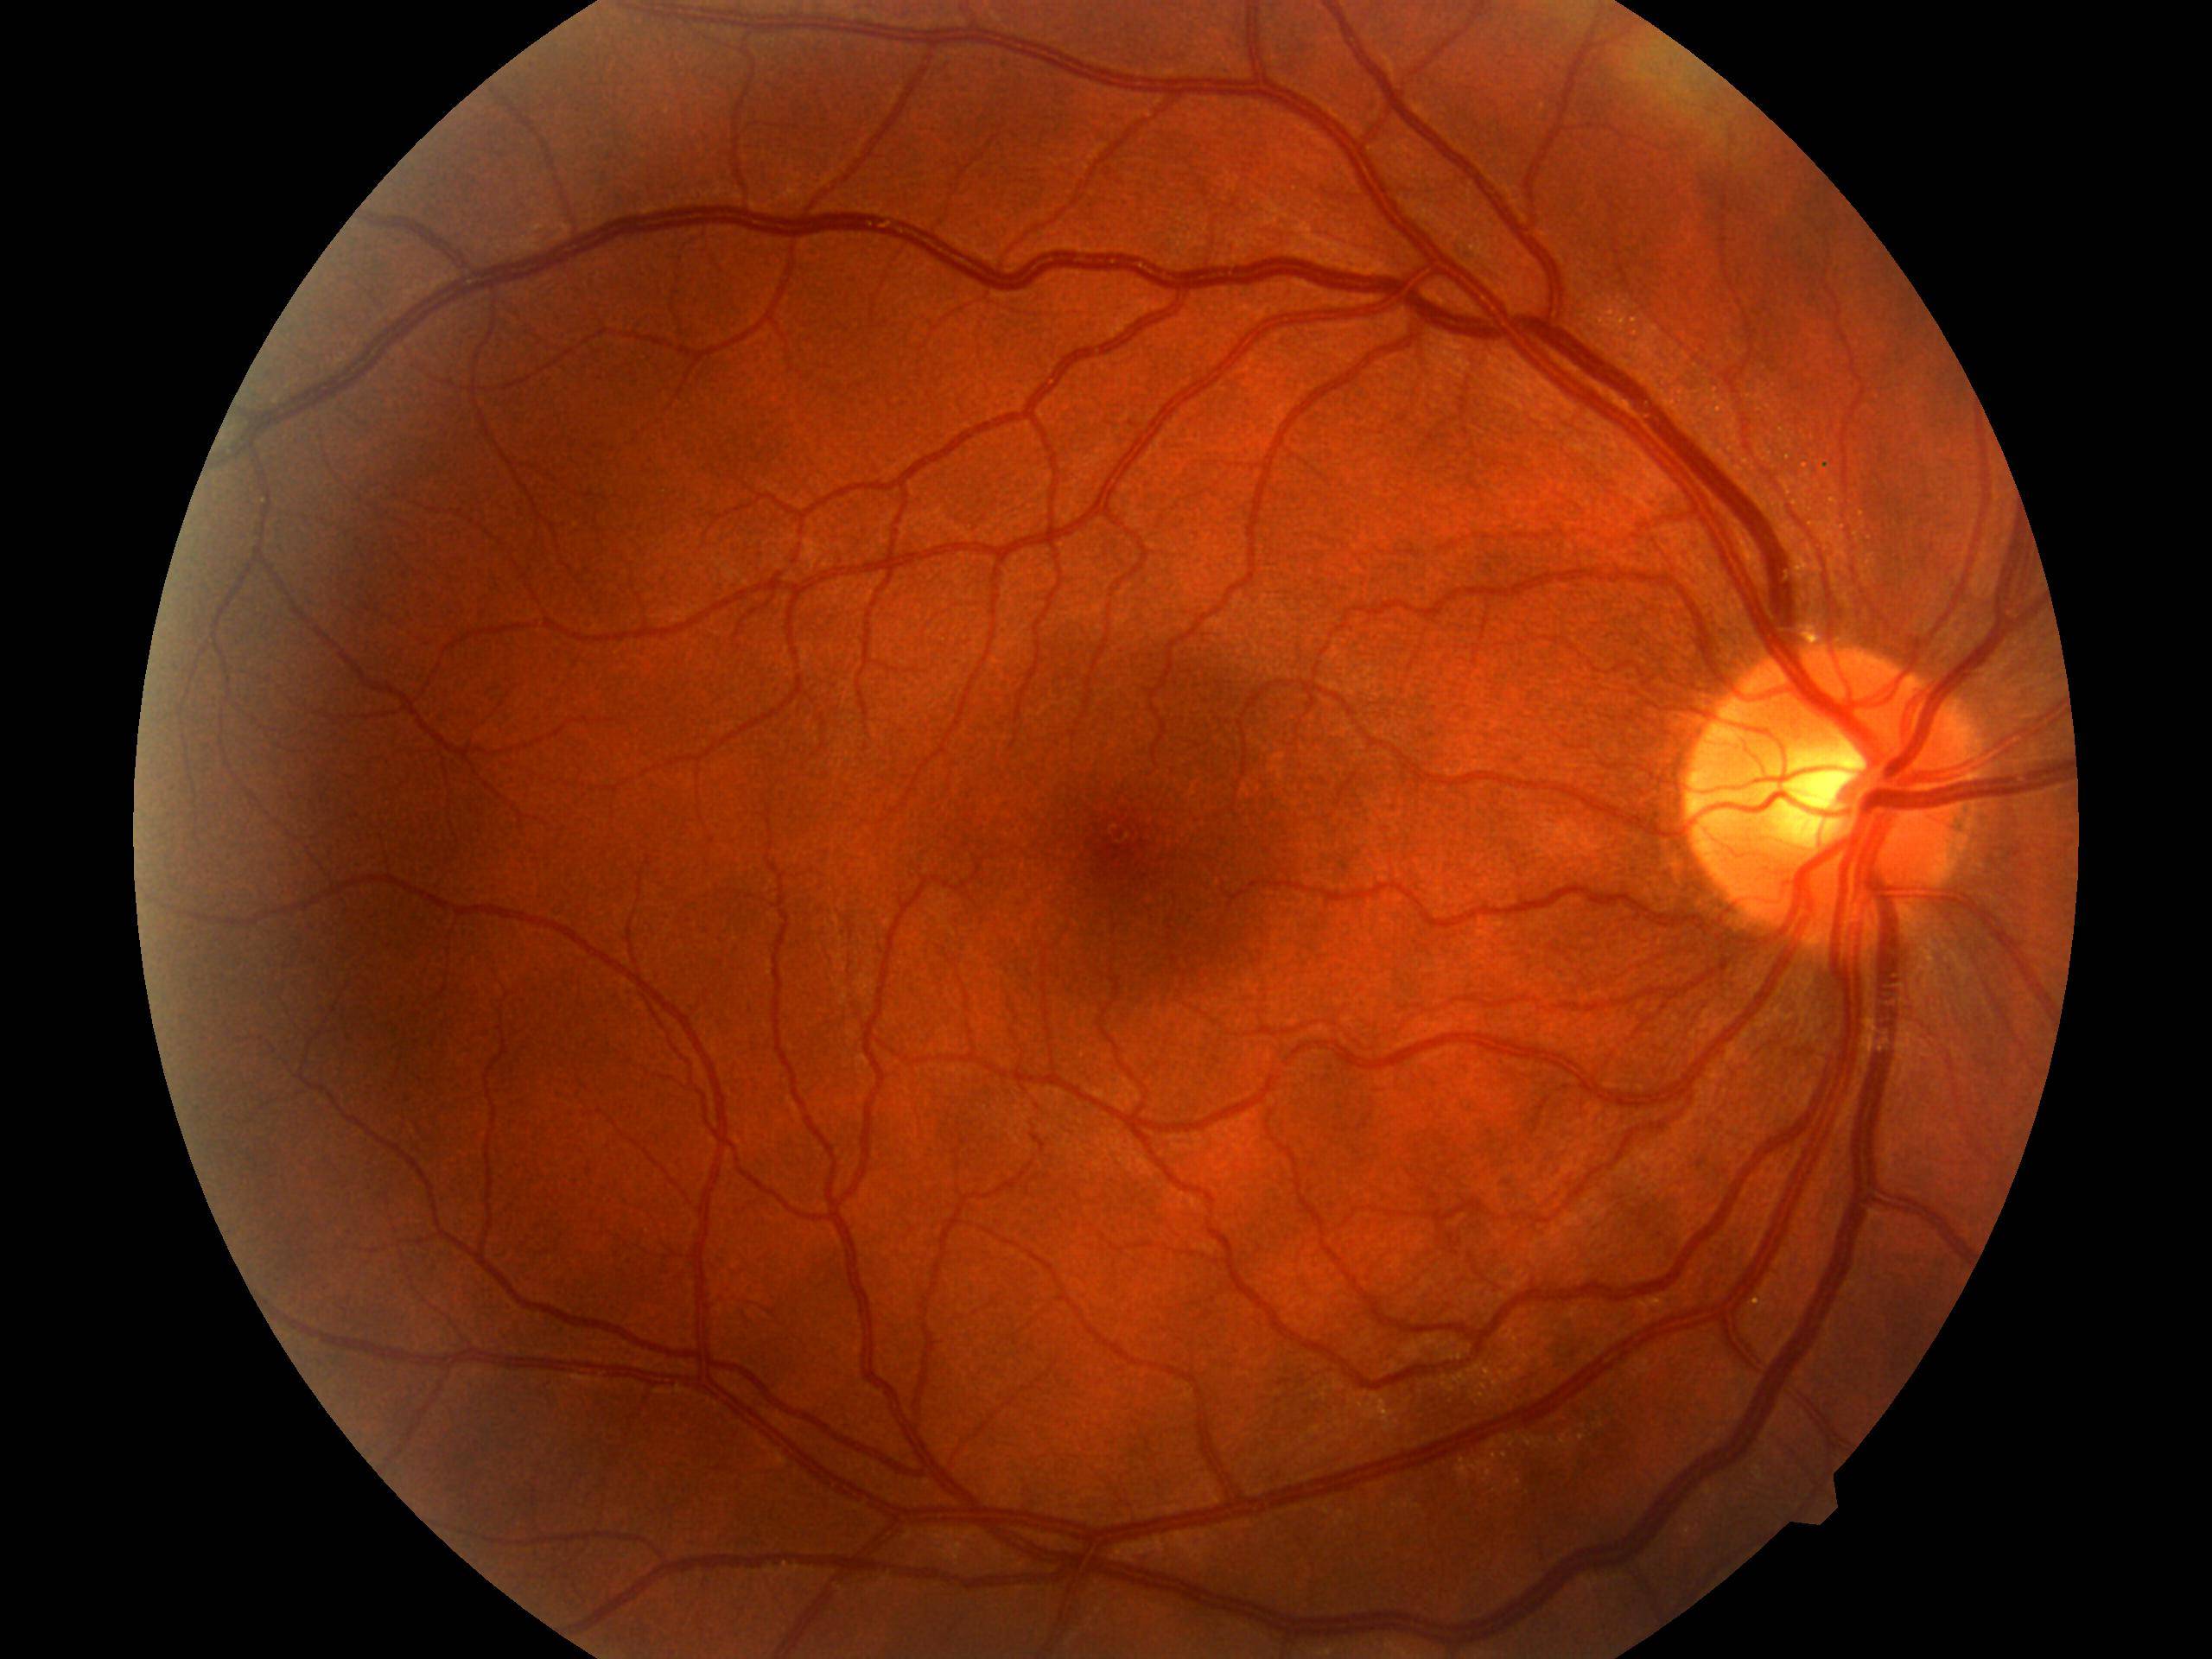 Макулодистрофия сетчатки глаза - что это, лечение, операция, причины и симптомы